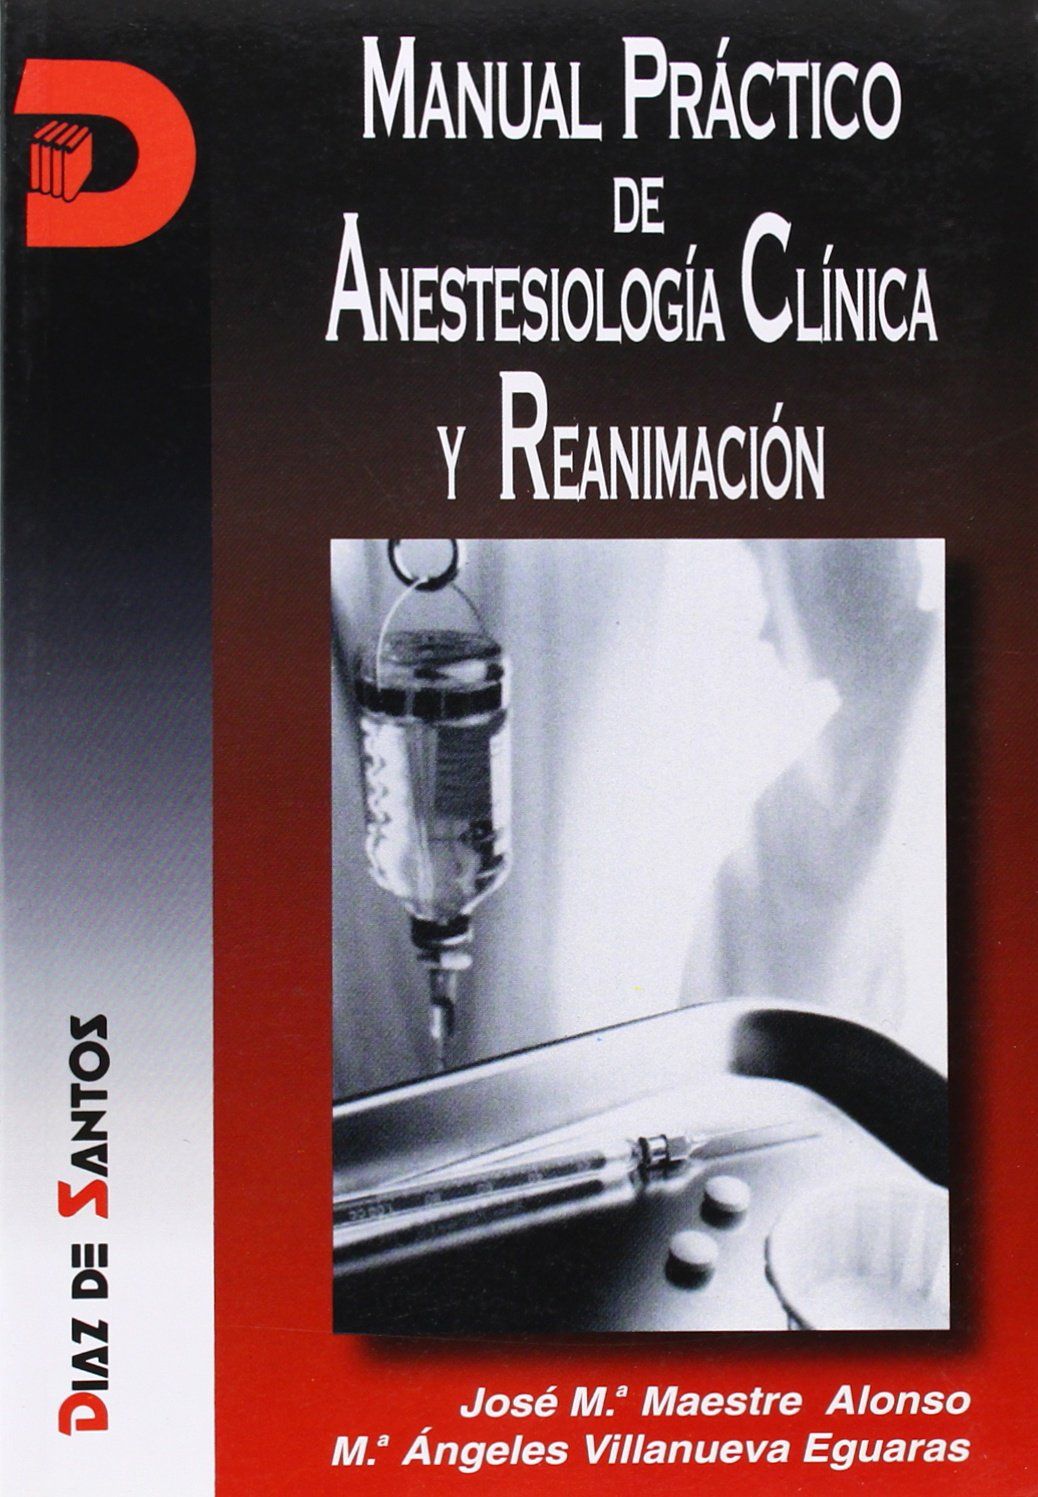 Manual Práctico de Anestesiología Clínica y Reanimación